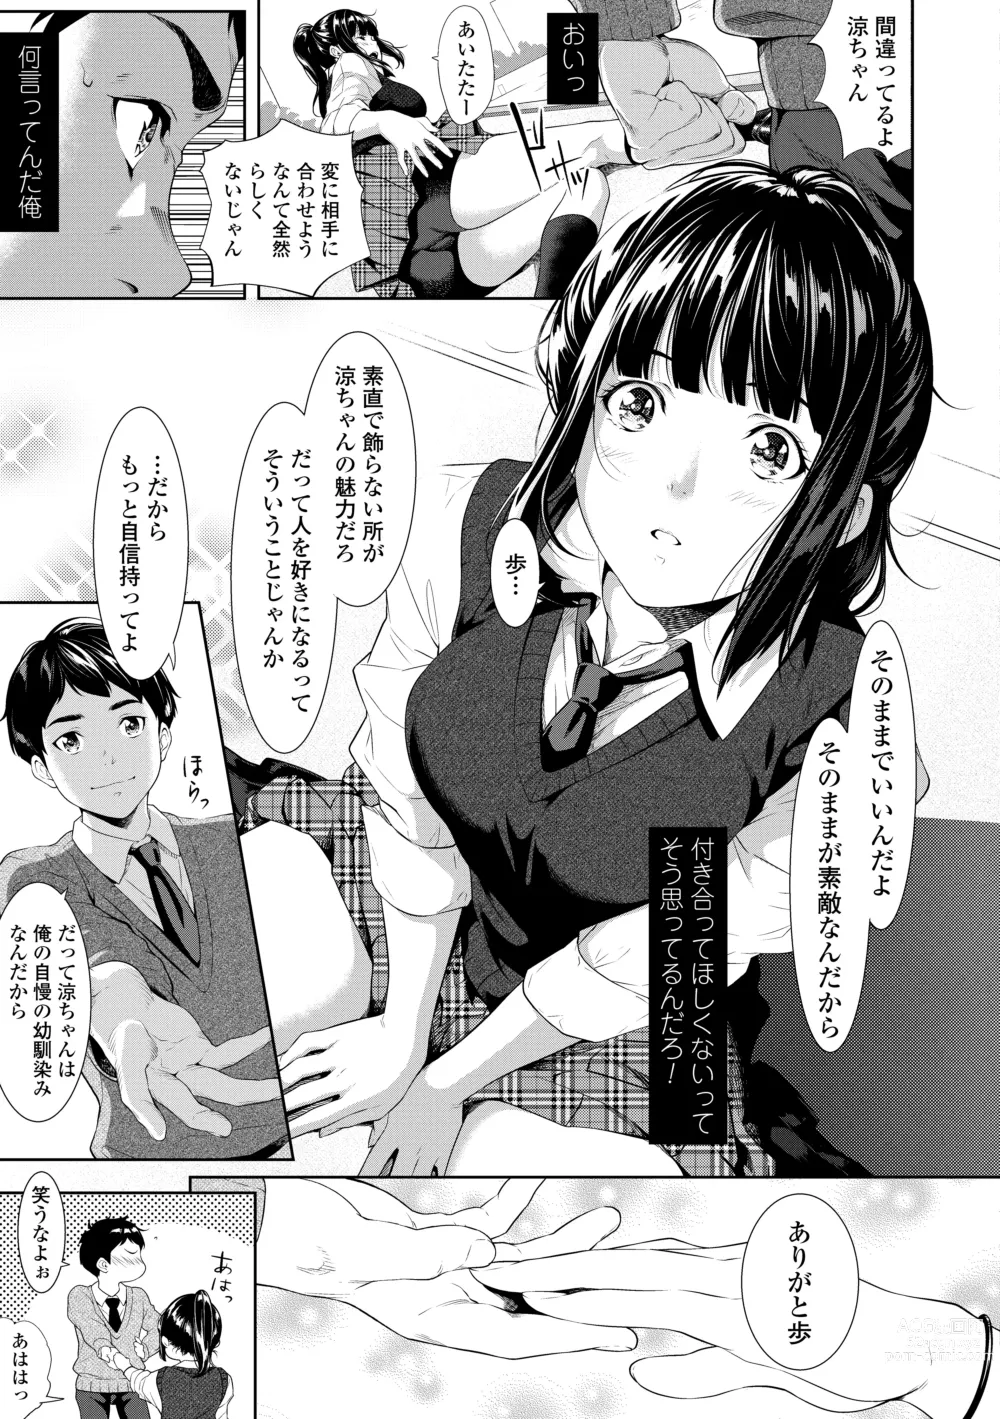 Page 13 of manga Tooi Kimi ni, Boku wa Todokanai - I cant reach you, far away.